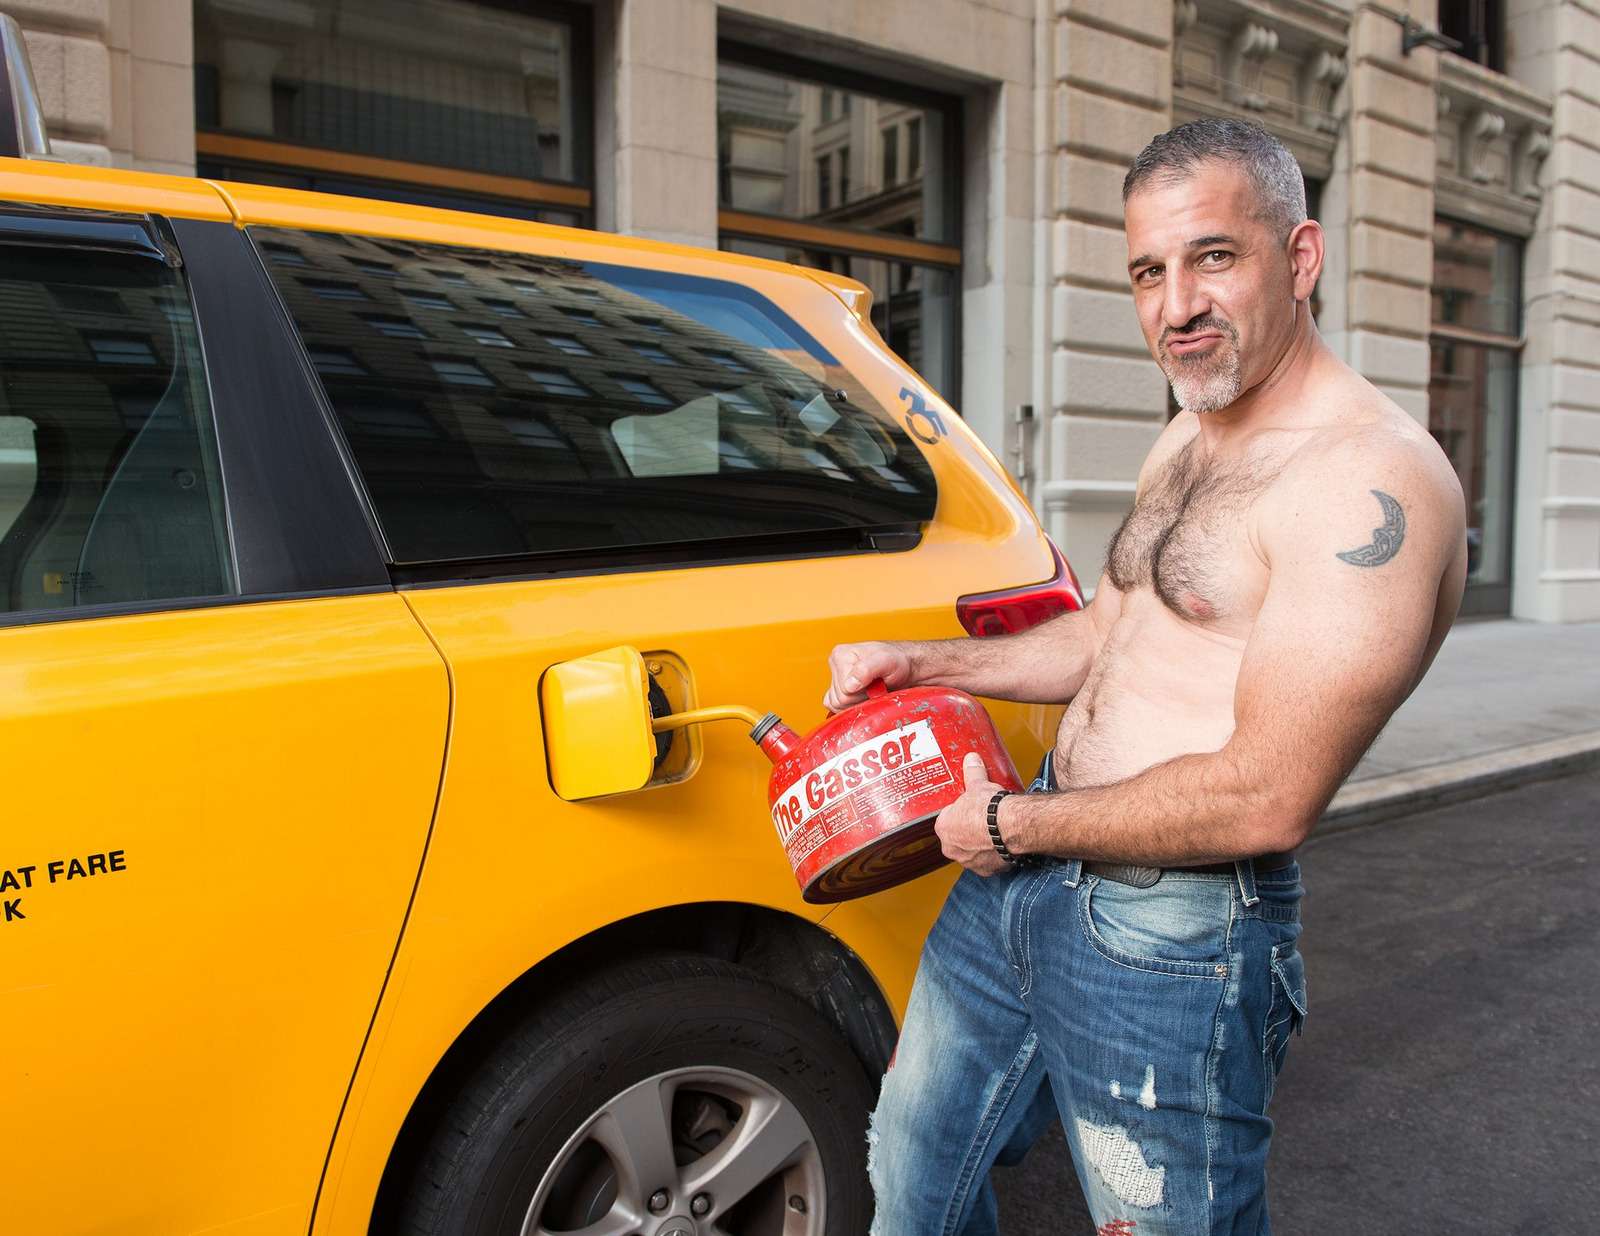 Осторожно! Некрасивые мужчины! Пародийный календарь таксистов Нью-Йорка — фото 818734